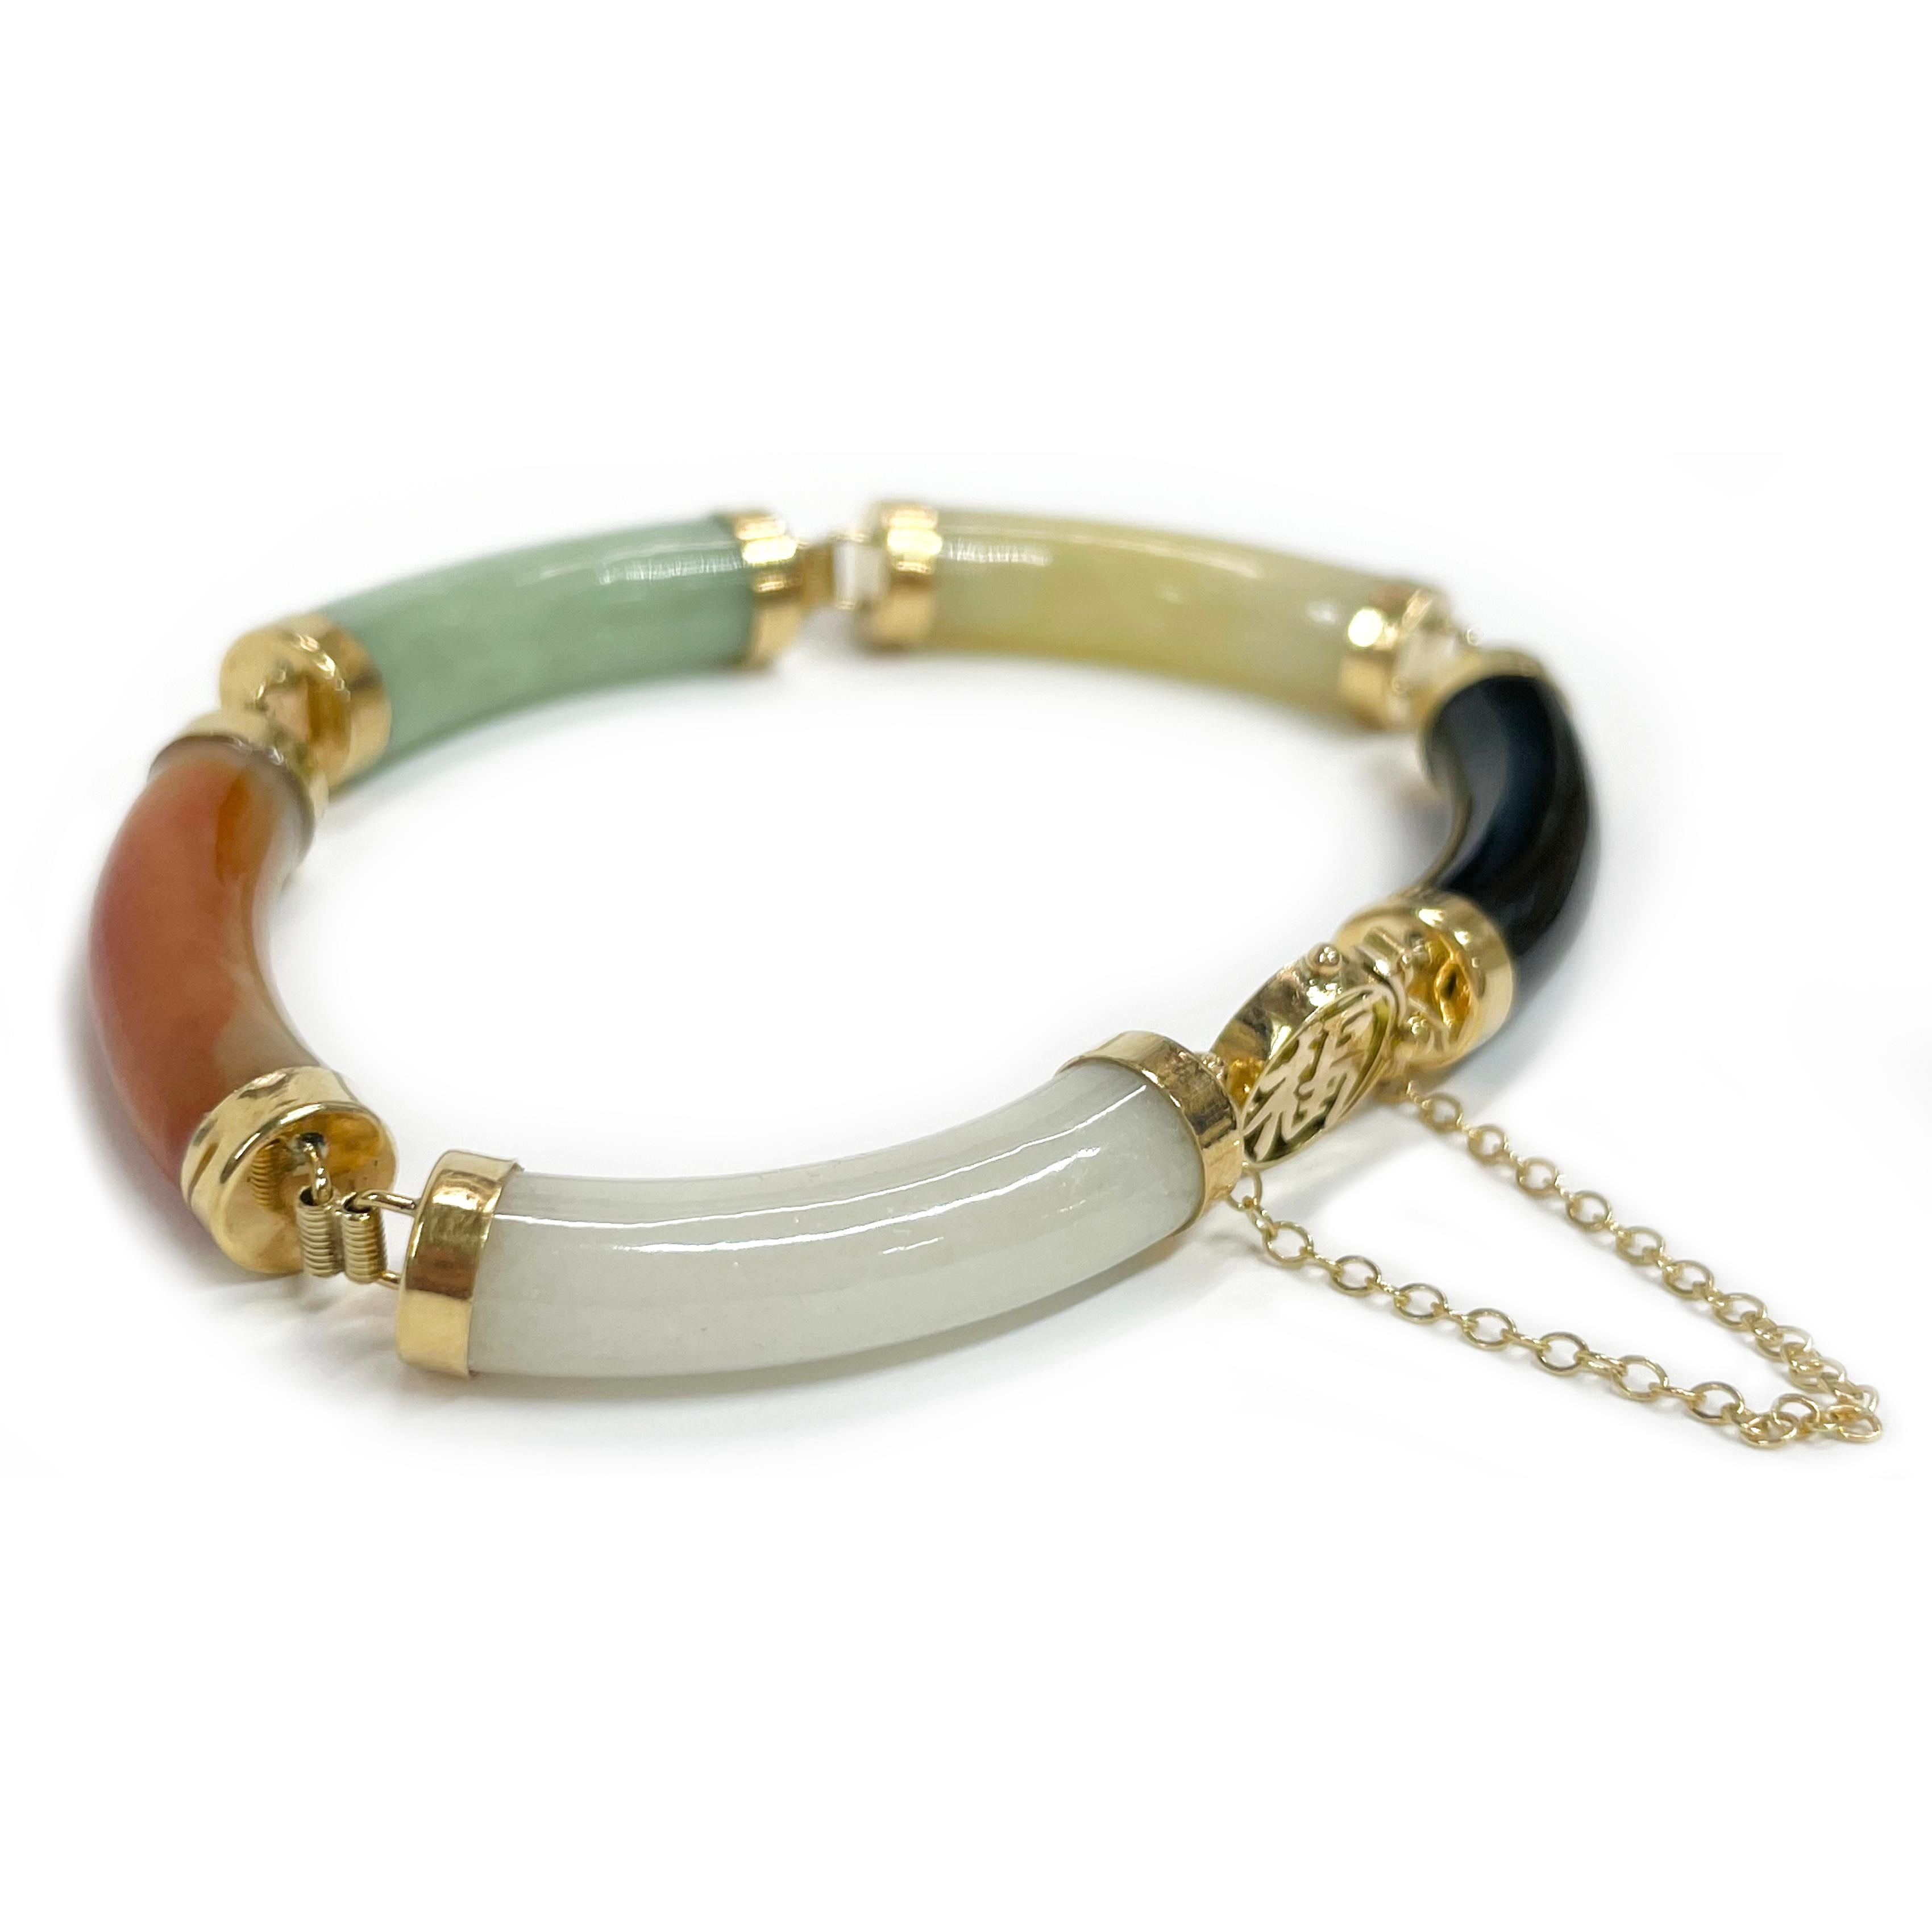 Bracelet en or jaune 14 carats avec maillons en jade multicolore de Chine. Le bracelet est composé de tubes incurvés en jade blanc, rouge et jaune marbré, vert clair et noir, pour un total de cinq maillons, chacun étant coiffé d'or 14k et relié par